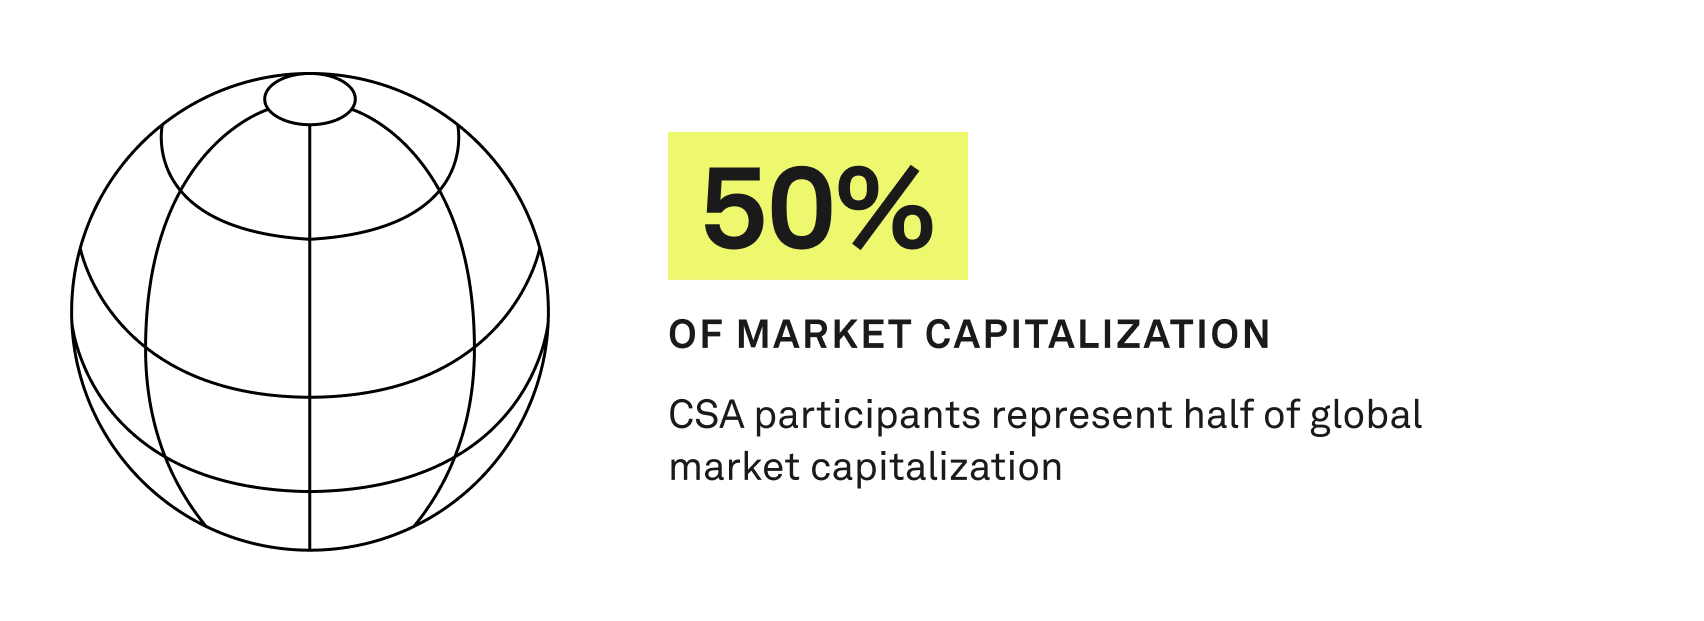 CSA participants represent half of global market capitalization